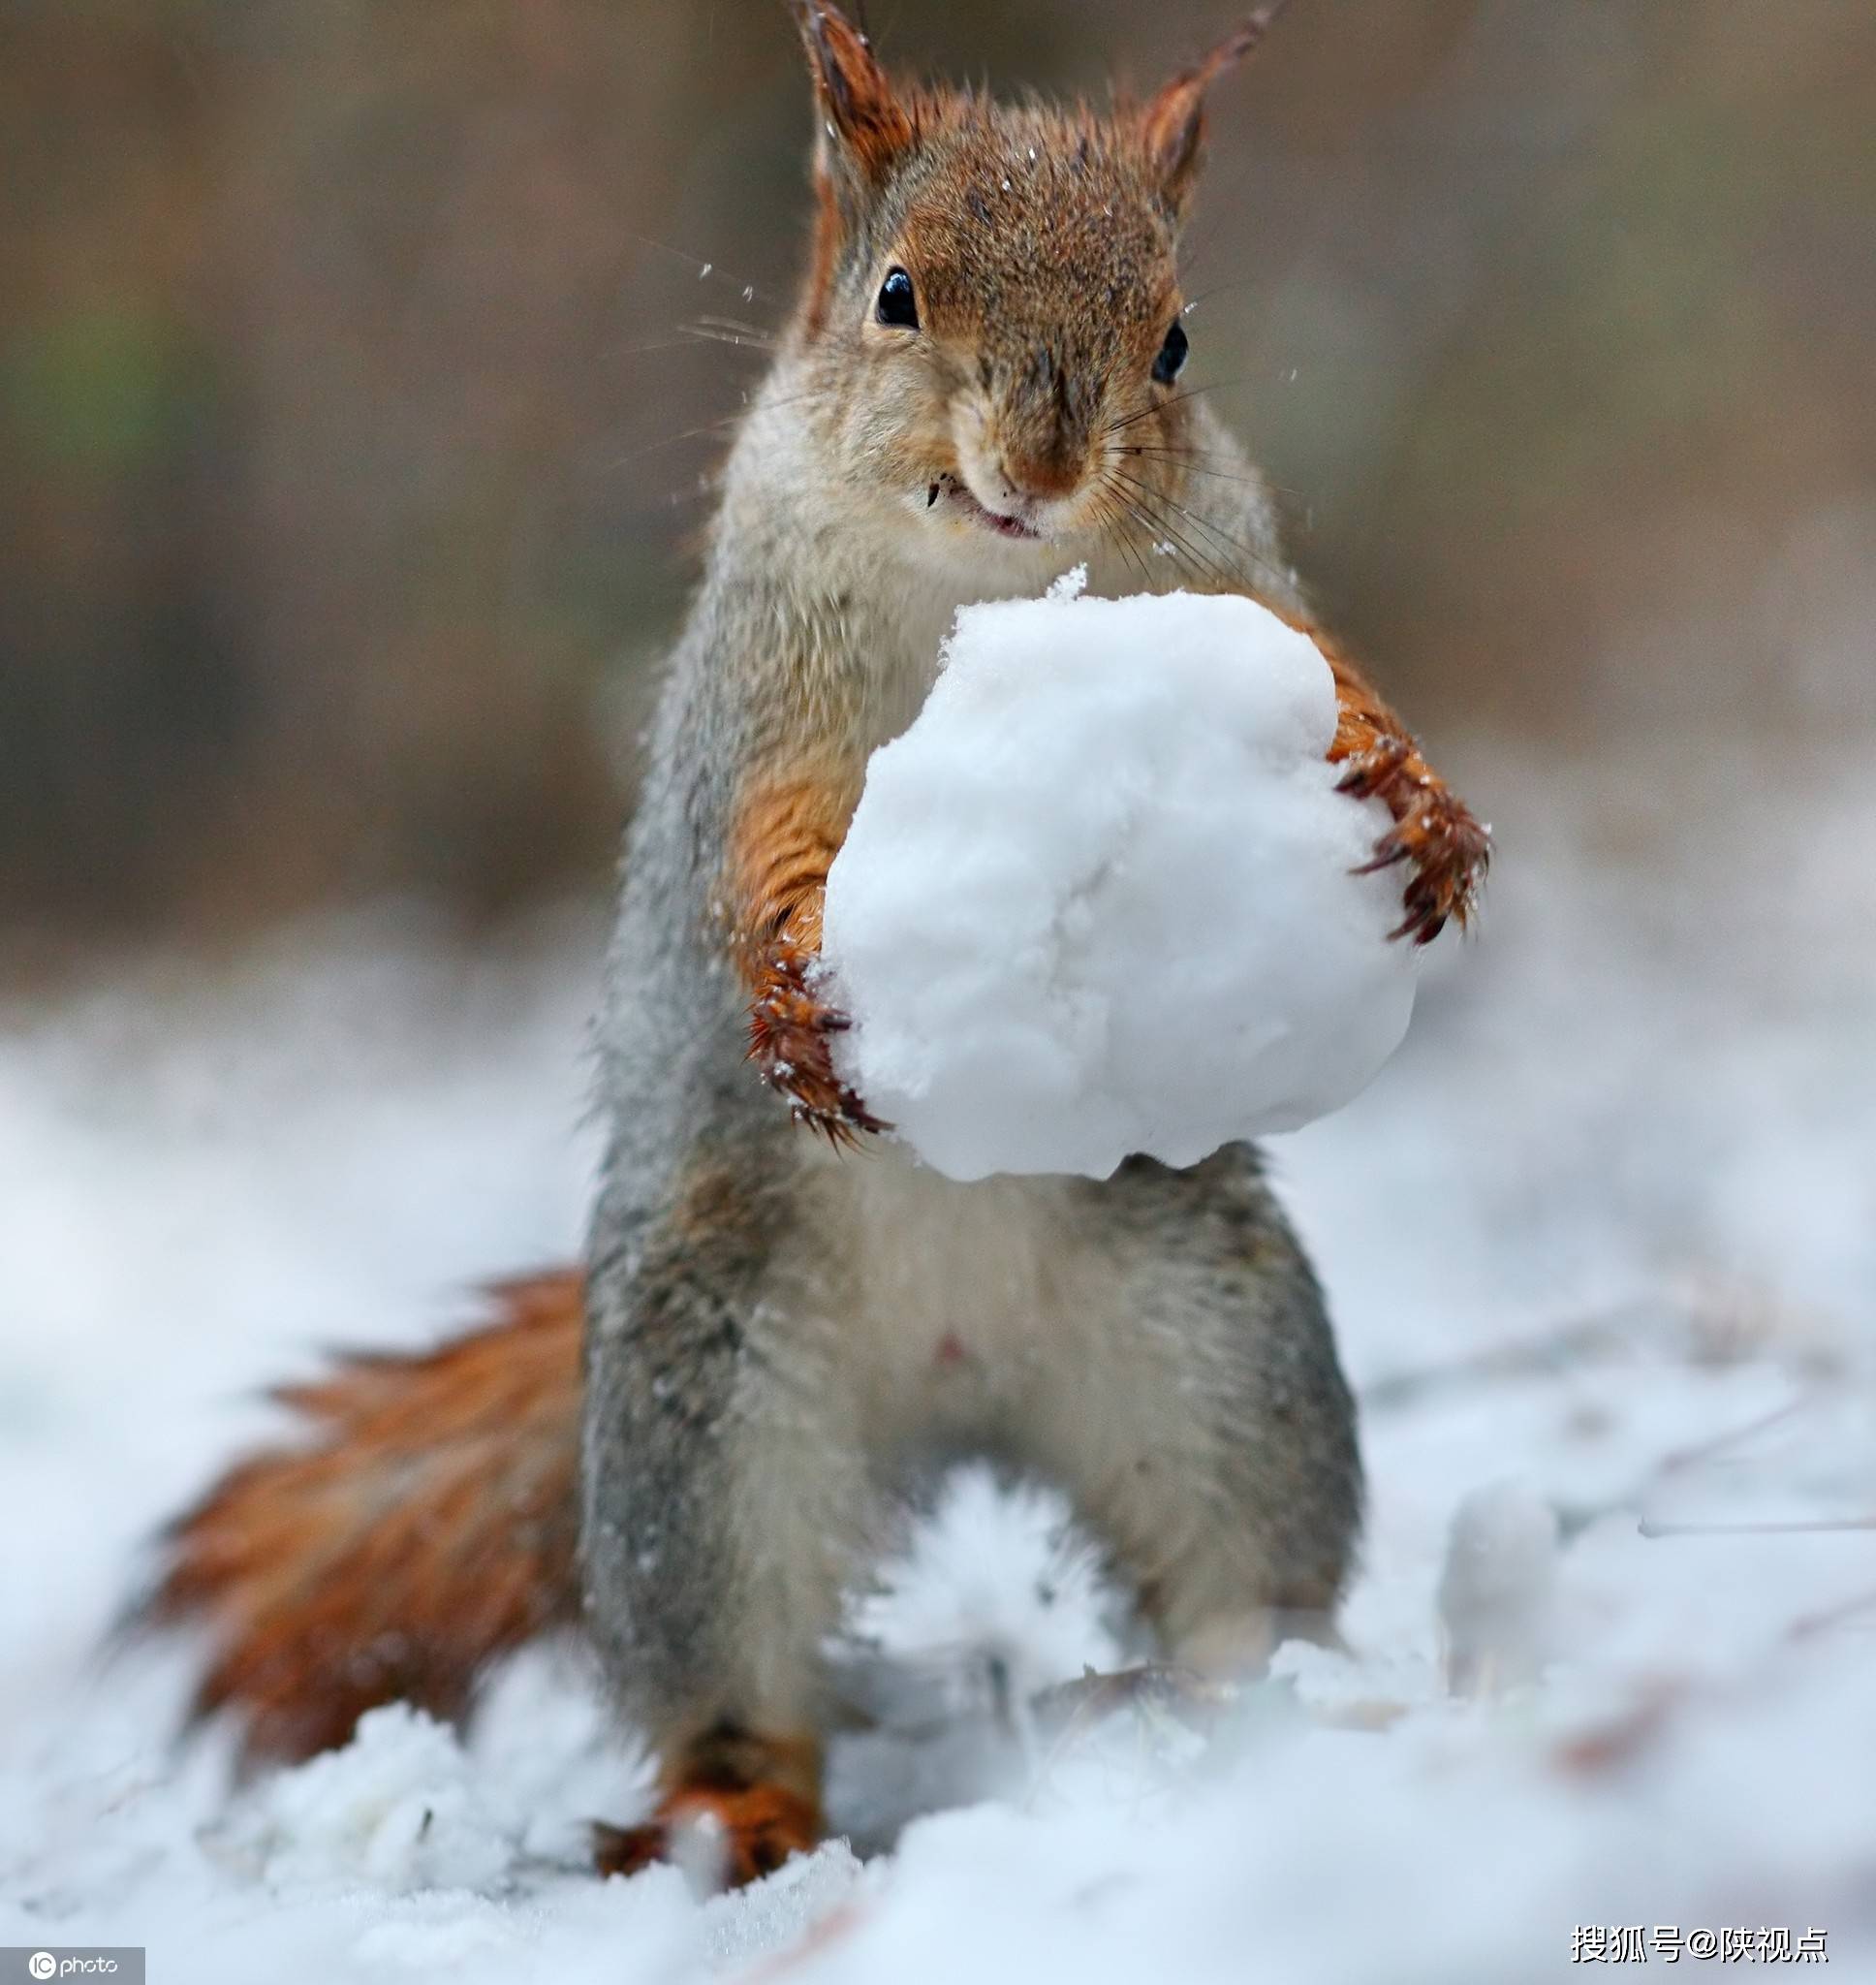 冬日已至大雪纷飞,小动物又是怎么过冬的呢?